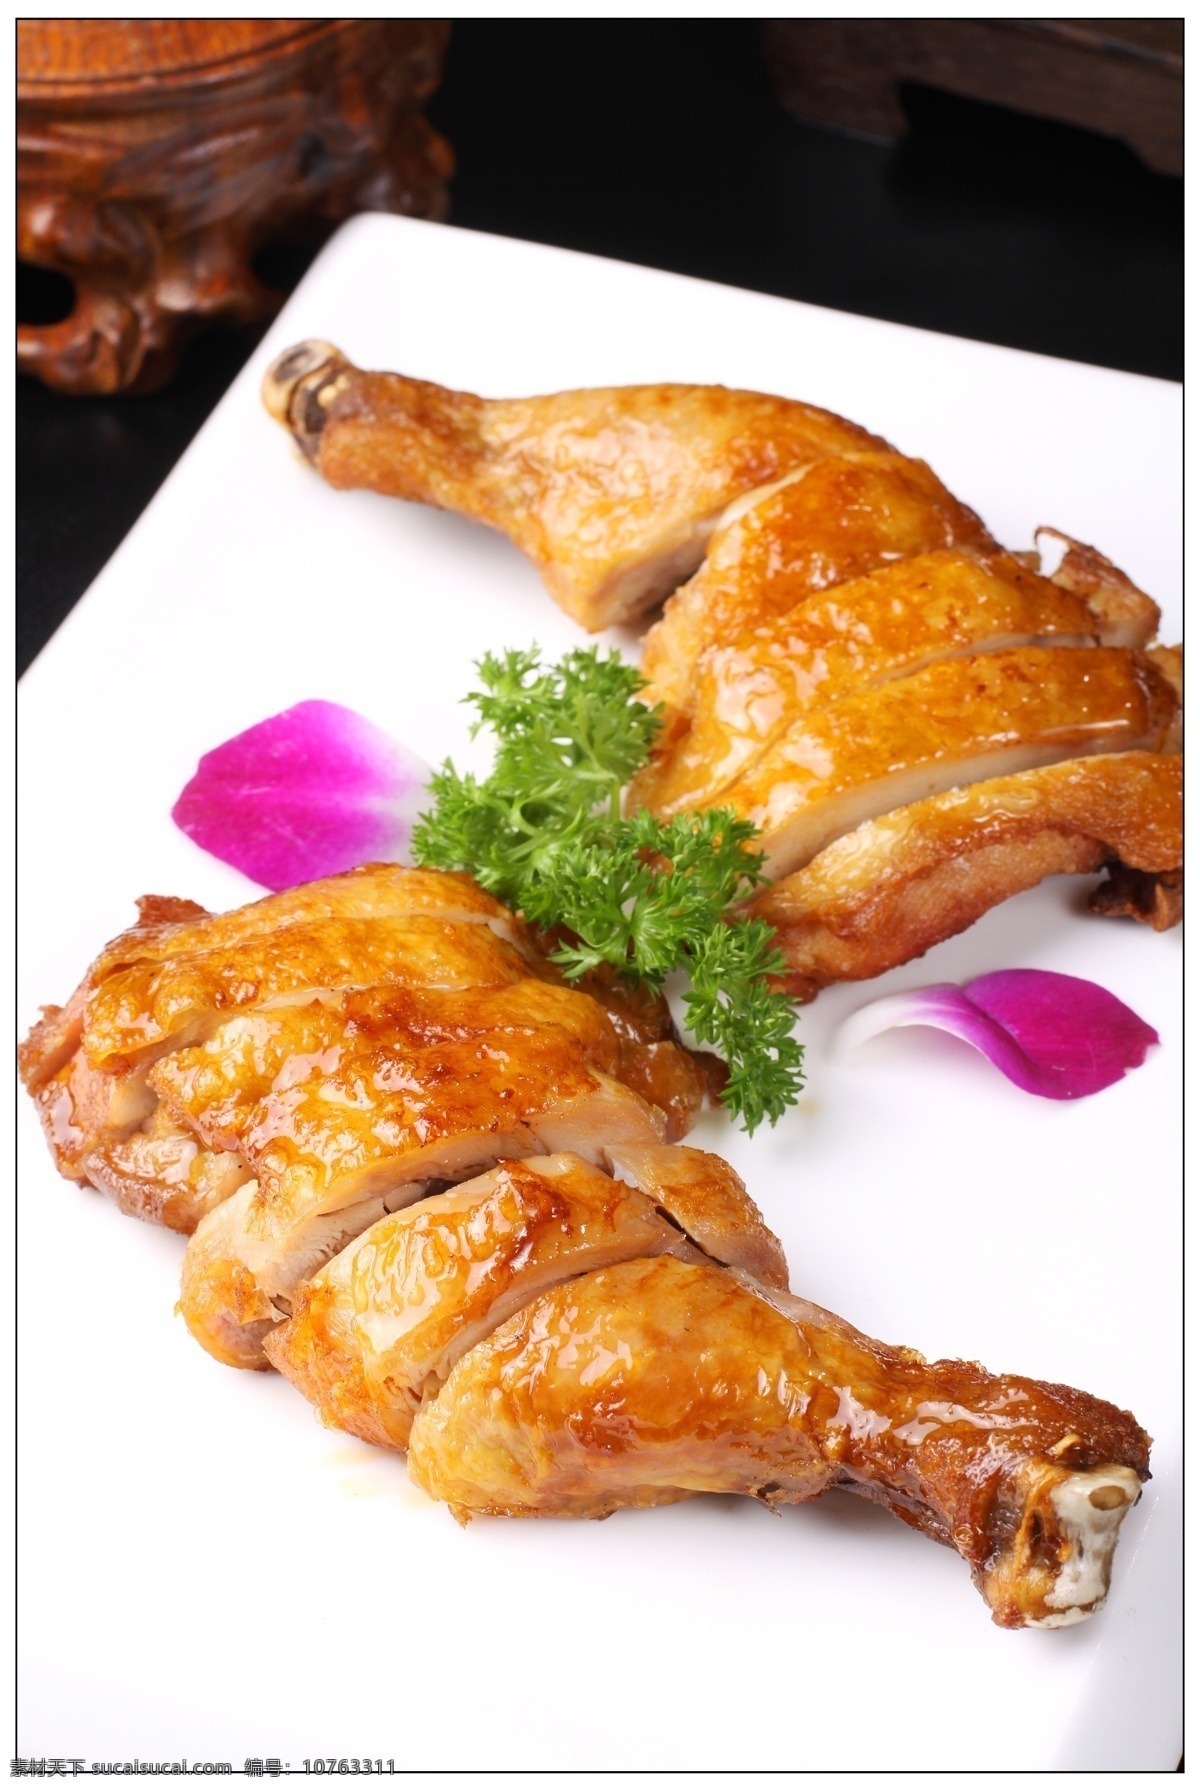 蒜香鸡腿 鸡丁 鸡肉 风味鸡 招牌鸡肉 特色鸡肉 招牌鸡 家常菜 传统菜 菜 餐饮美食 传统美食